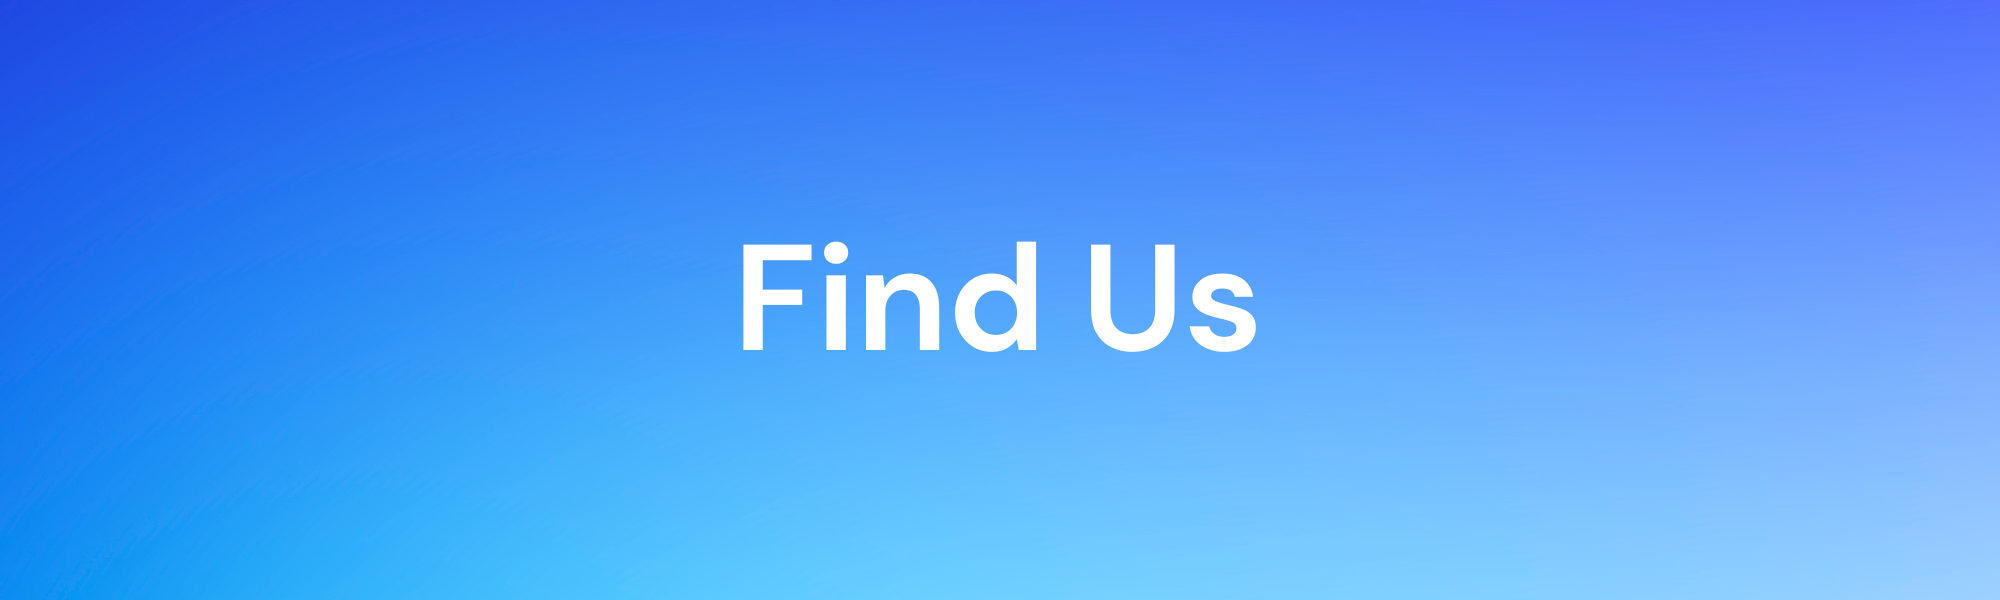 Section header, "Find Us"